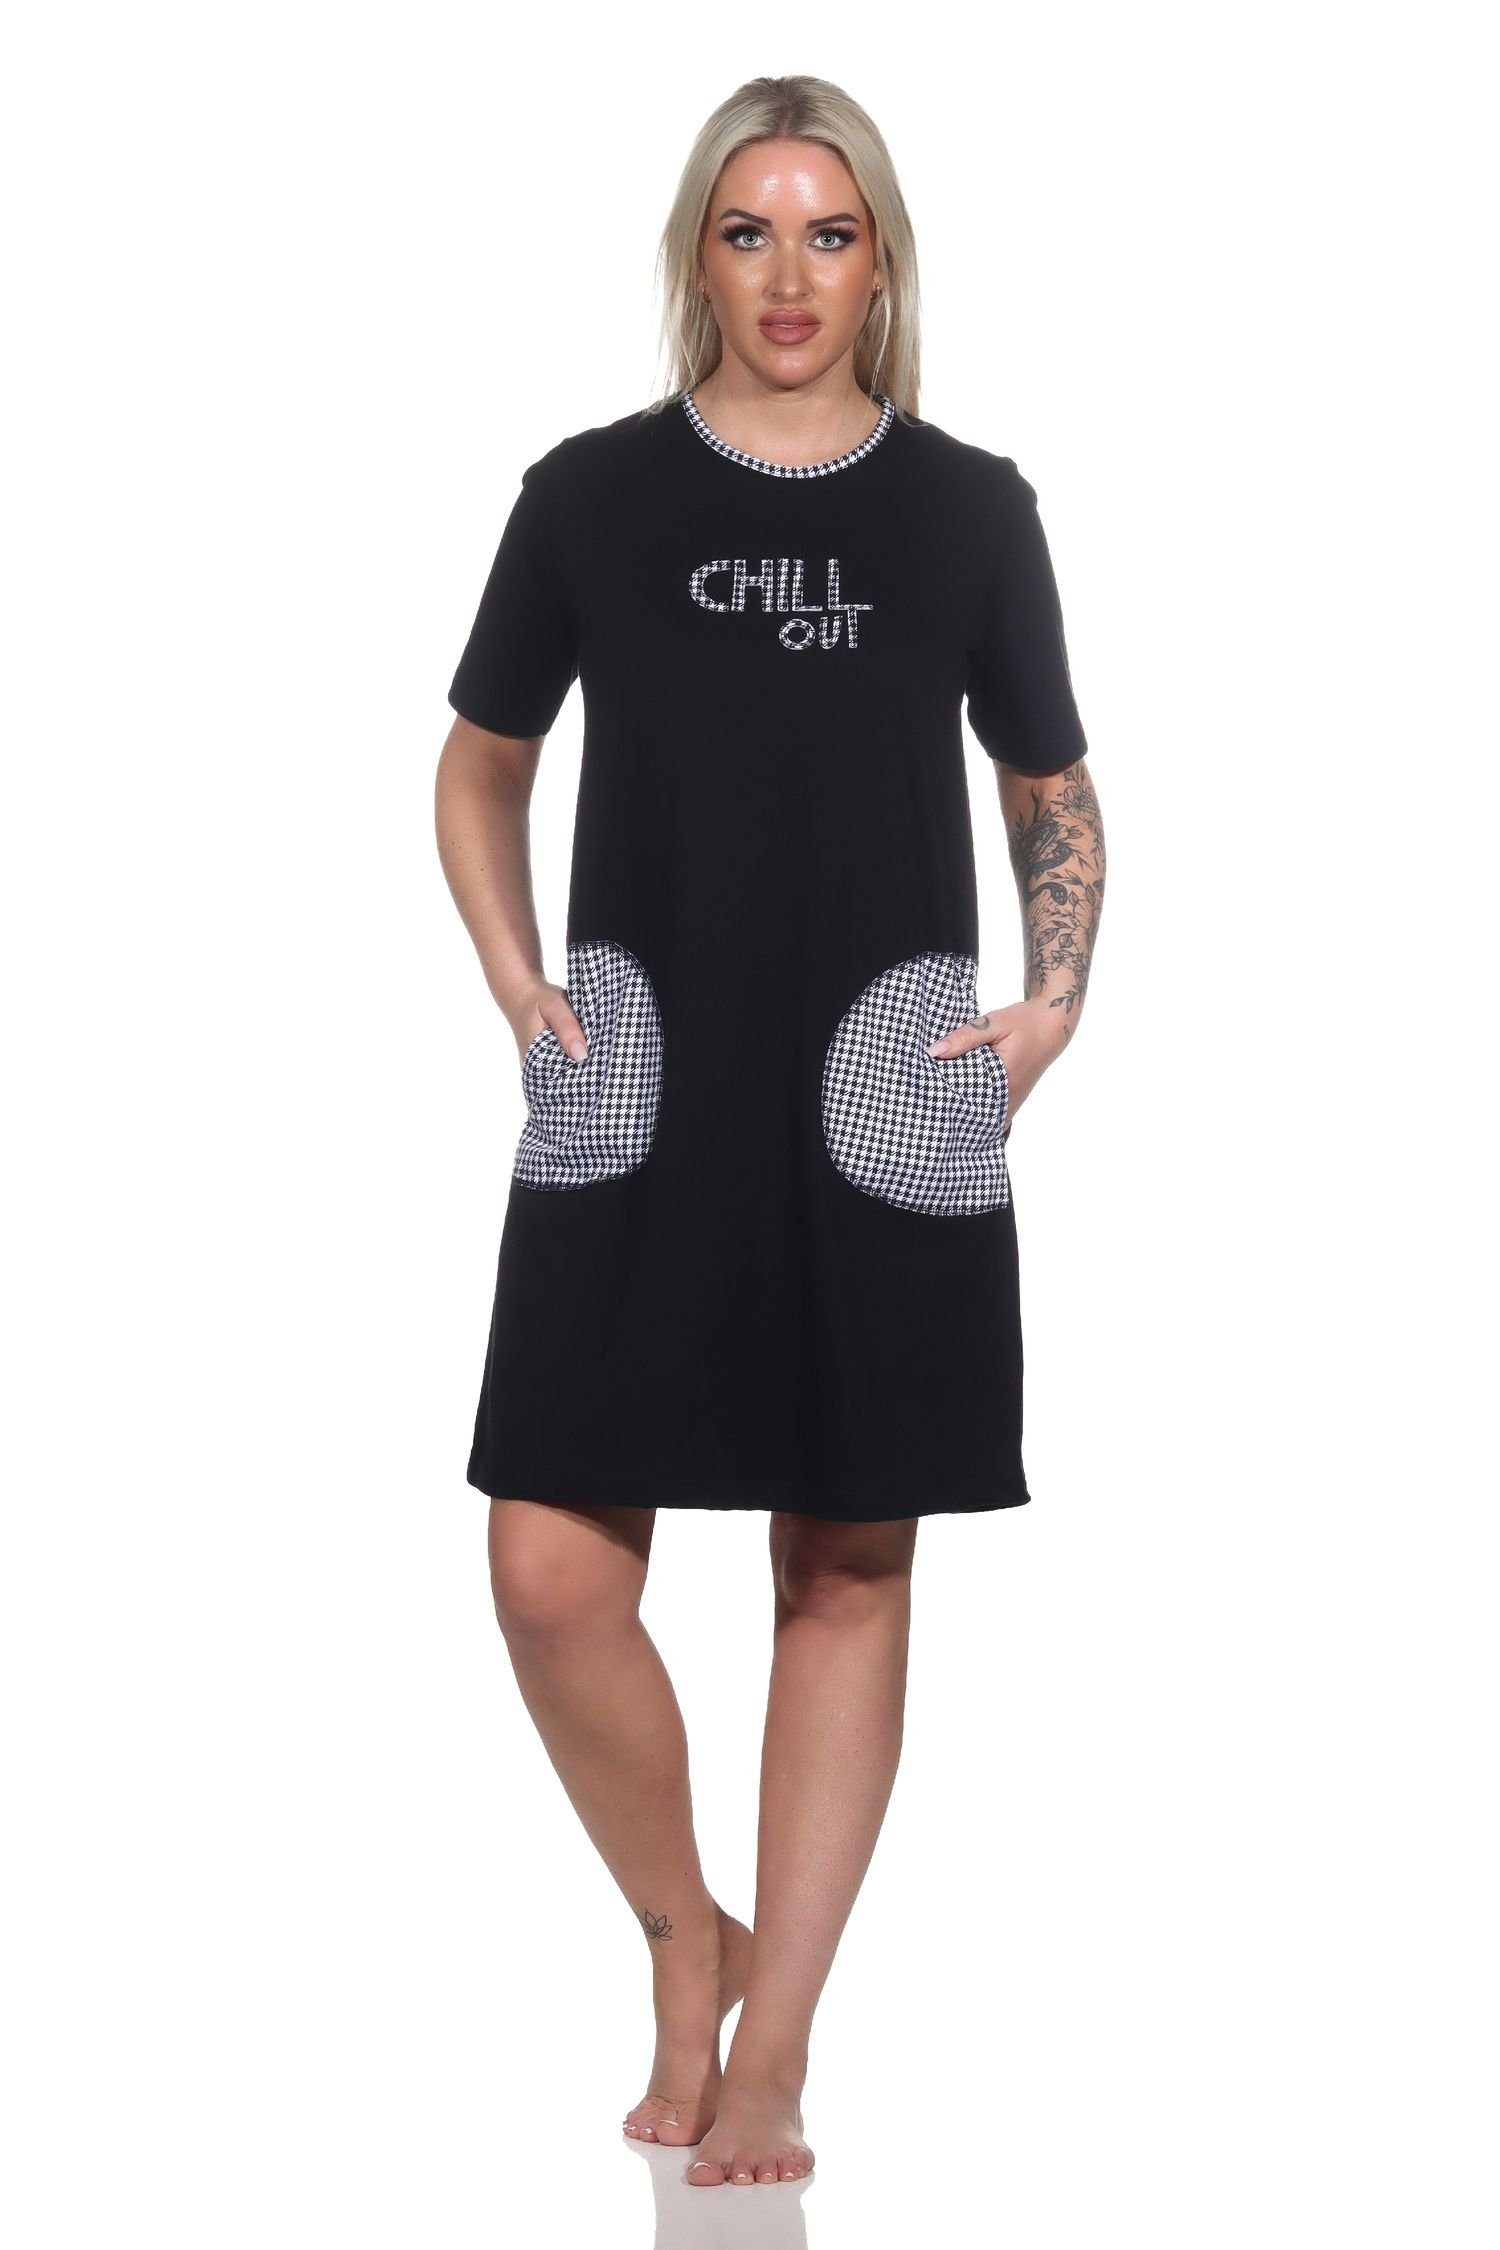 Normann Nachthemd Damen kurzarm Nachthemd mit aufgesetzten Taschen und Frontprint